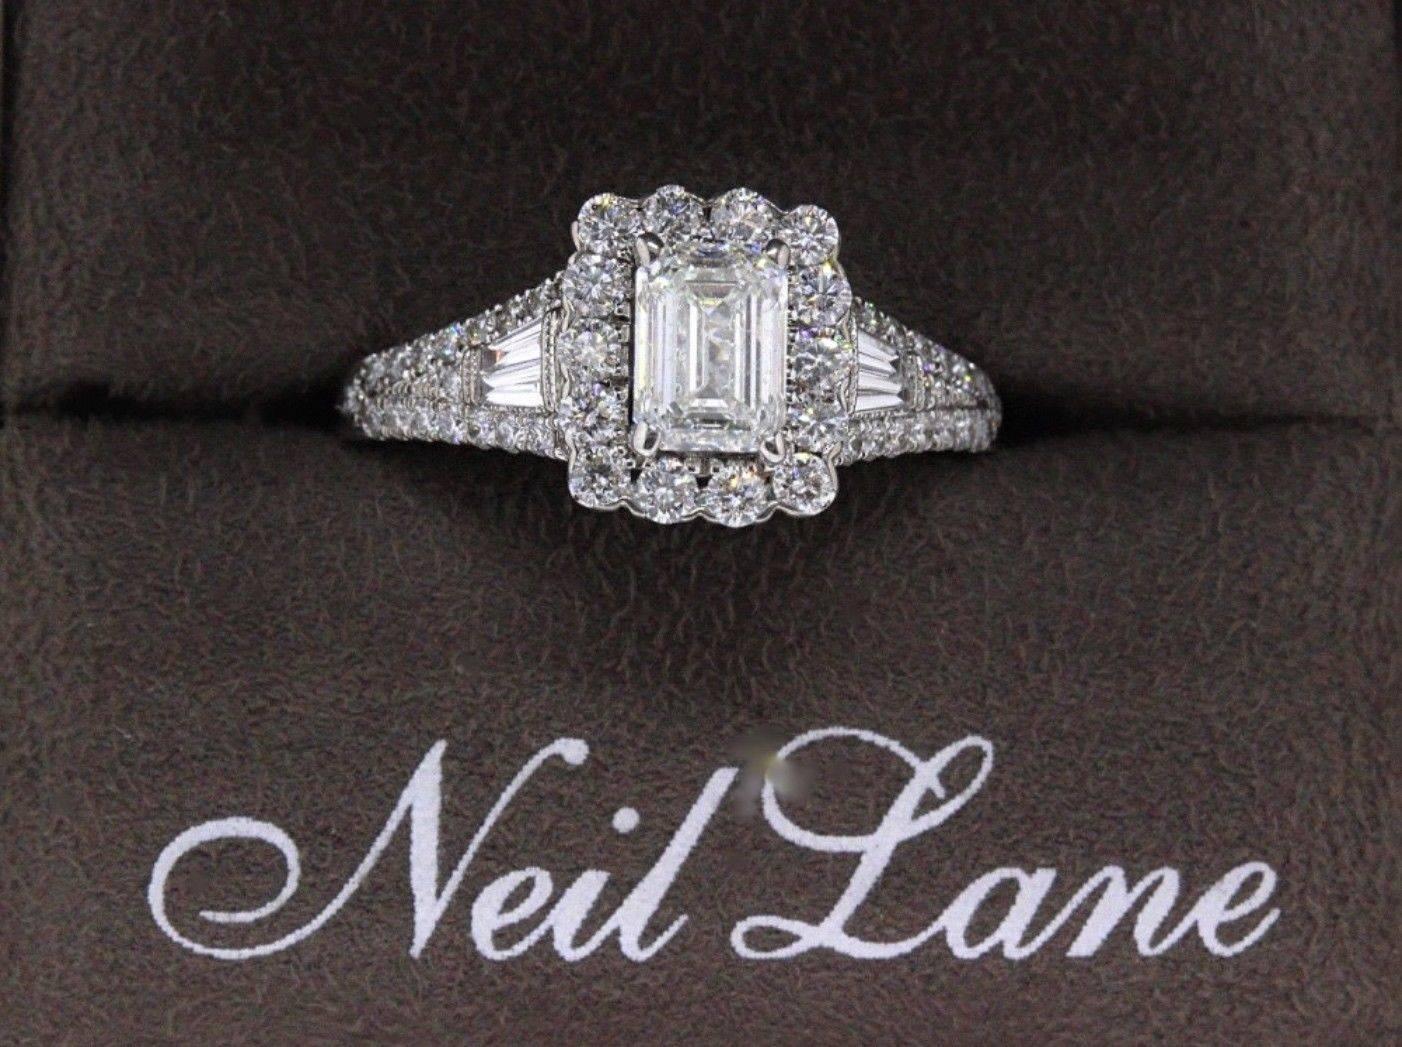 Neil Lane Emerald Cut Diamond 1 7/8 Carat Engagement Ring 14 Karat White Gold 4